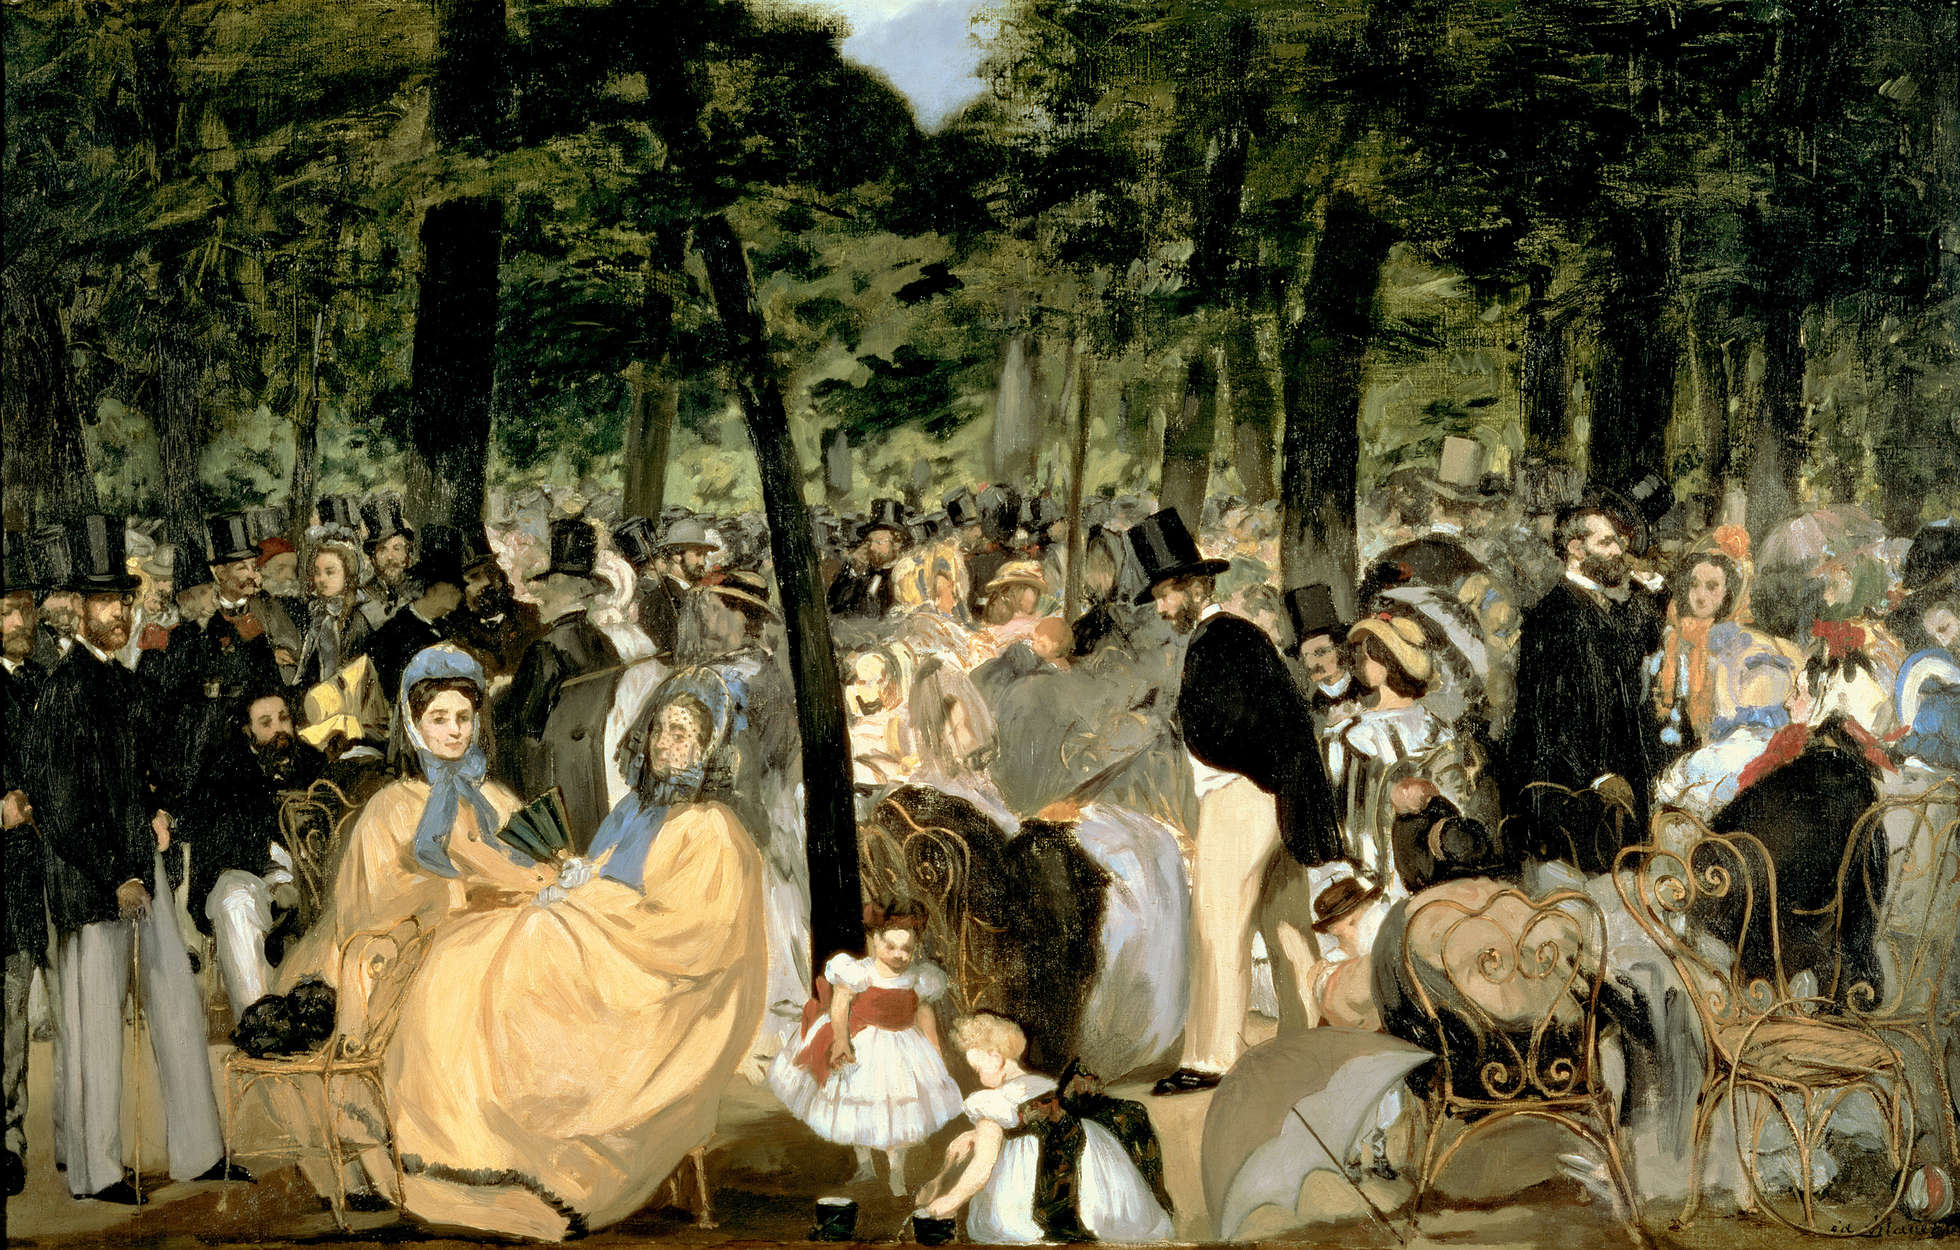             Papier peint "Musique dans les jardins des Tuileries" de Edouard Manet
        